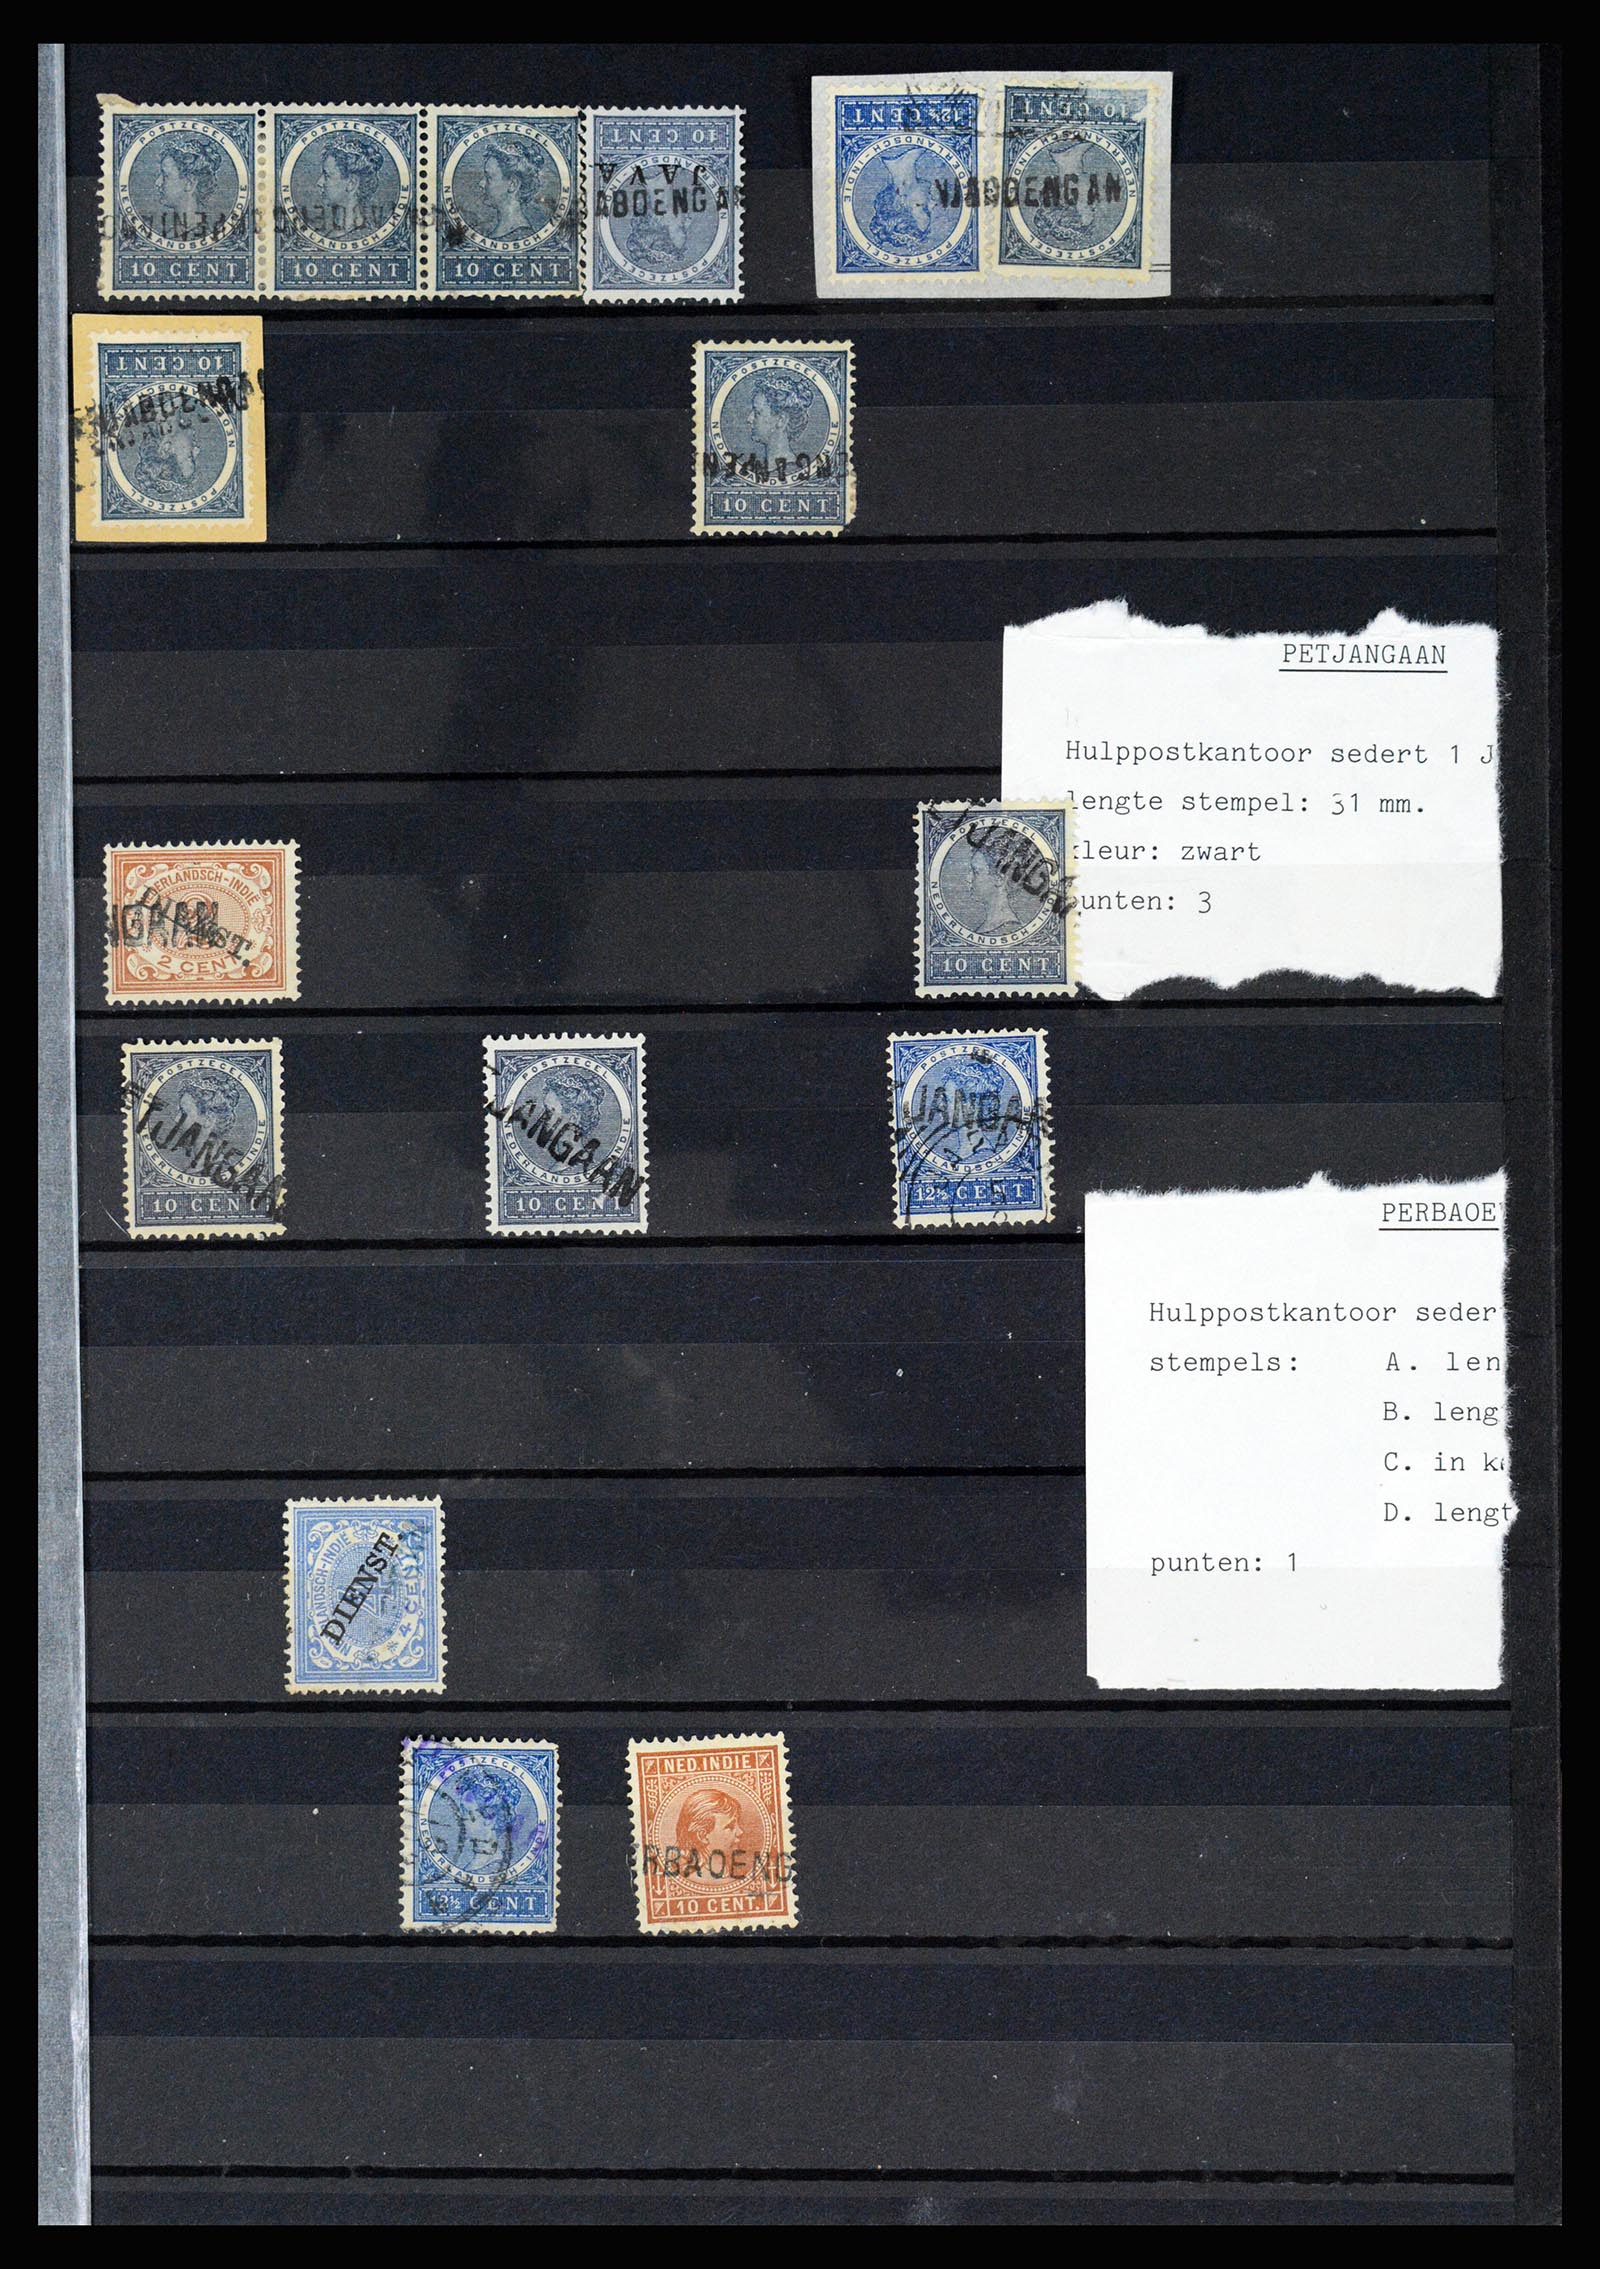 36512 057 - Stamp collection 36512 Nederlands Indië stempels 1872-1930.